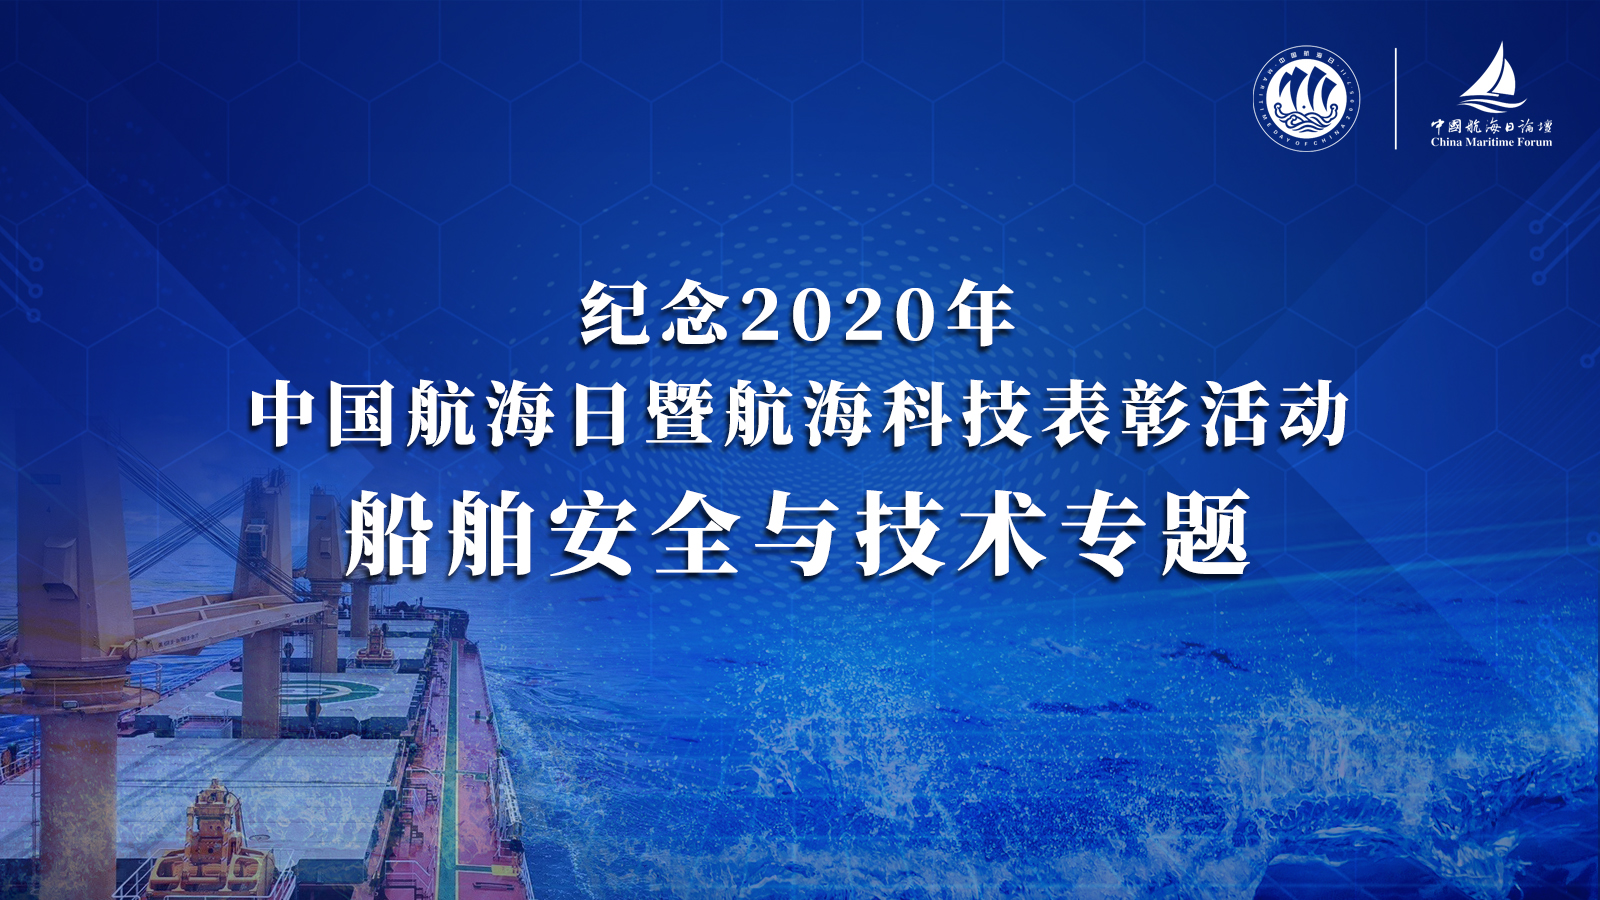 纪念2020年中国航海日暨航海科技表彰活动